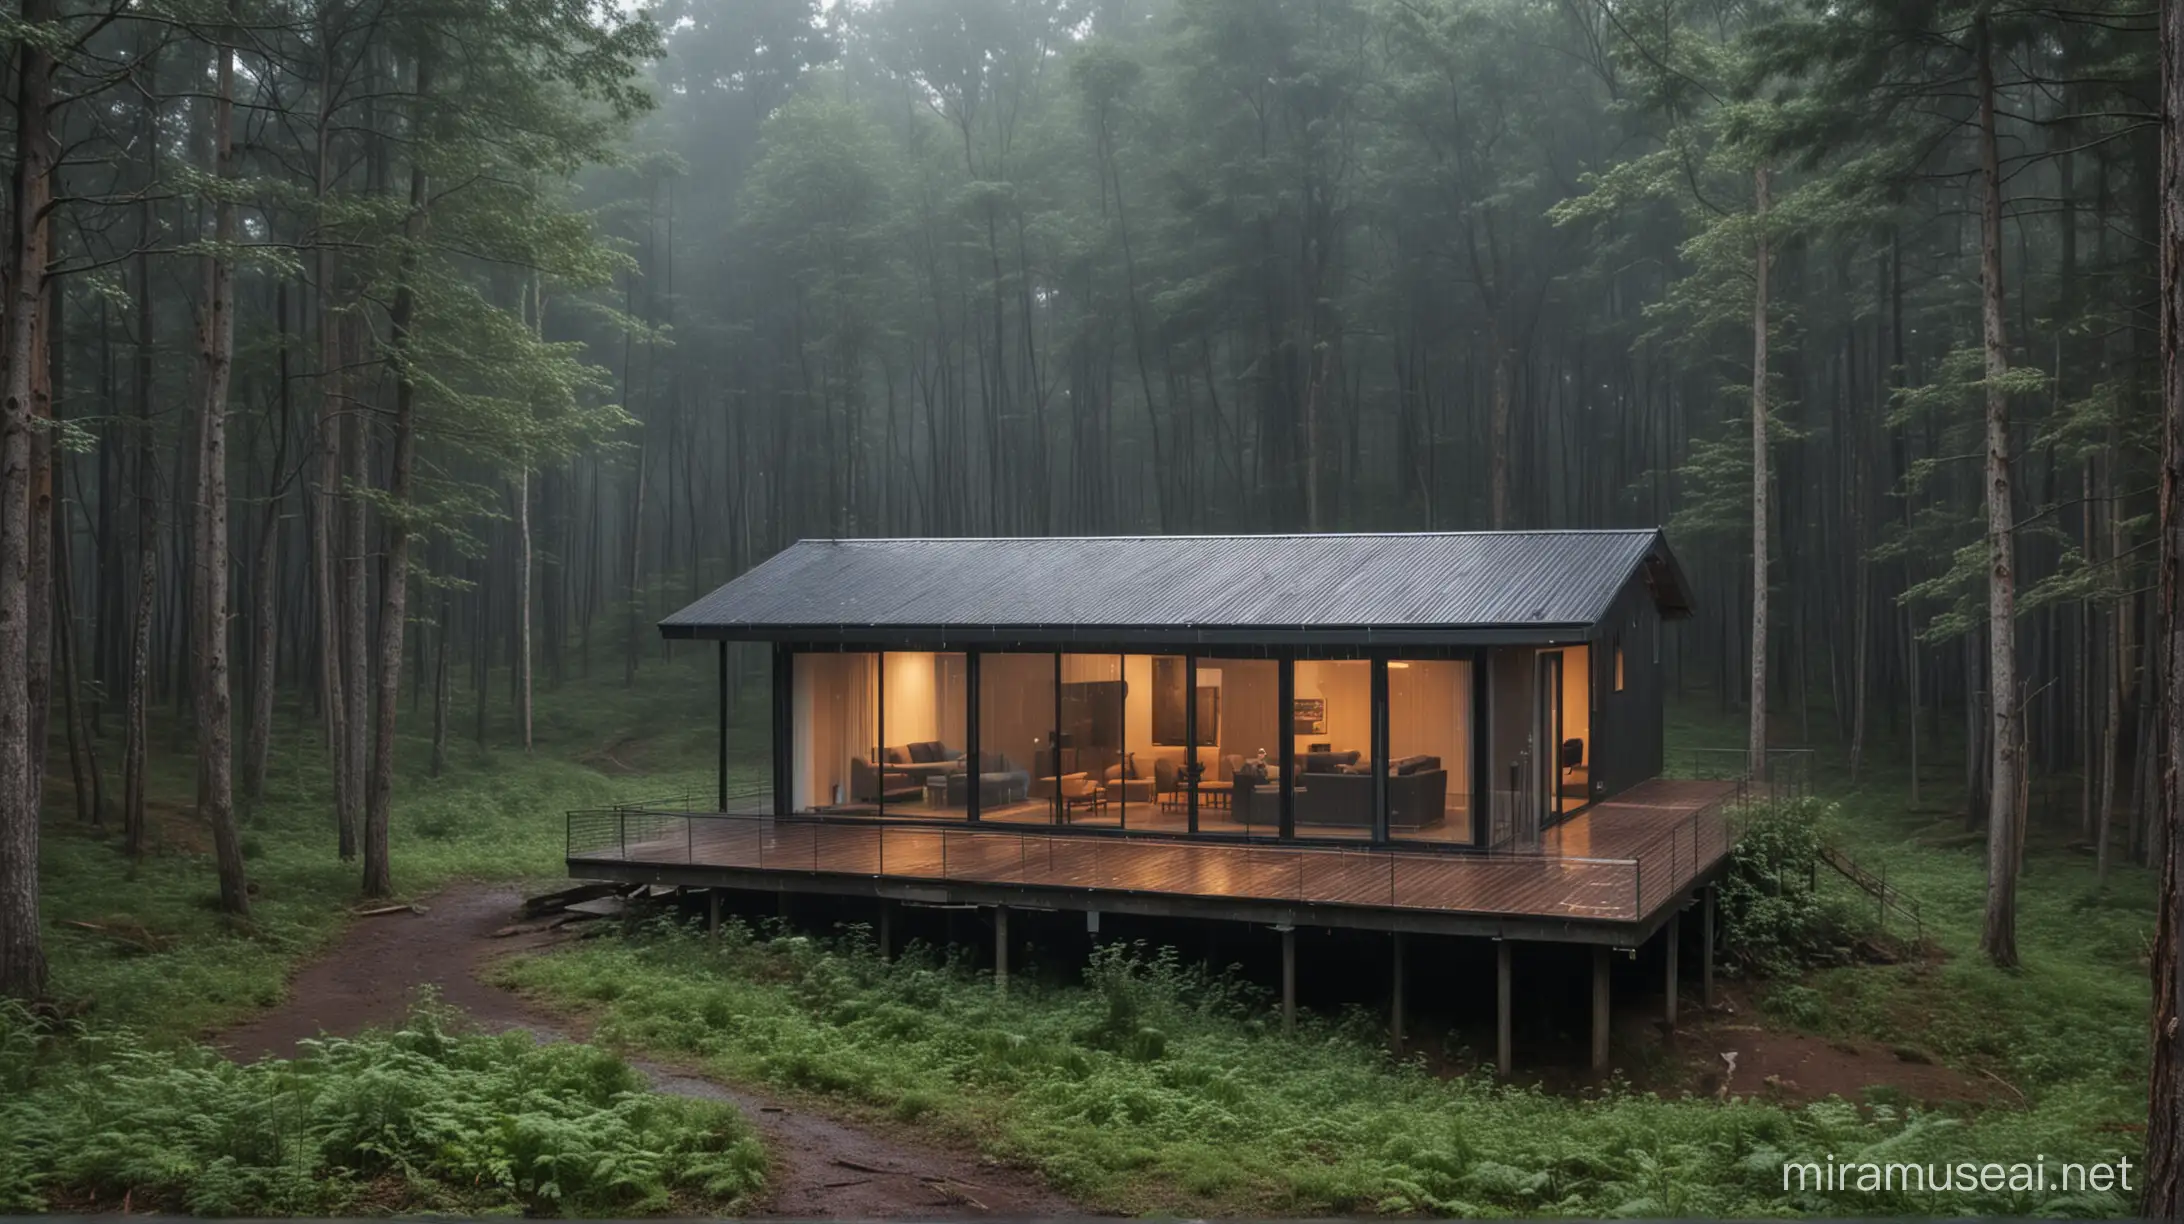 Rumah Hujan ditengah hutan